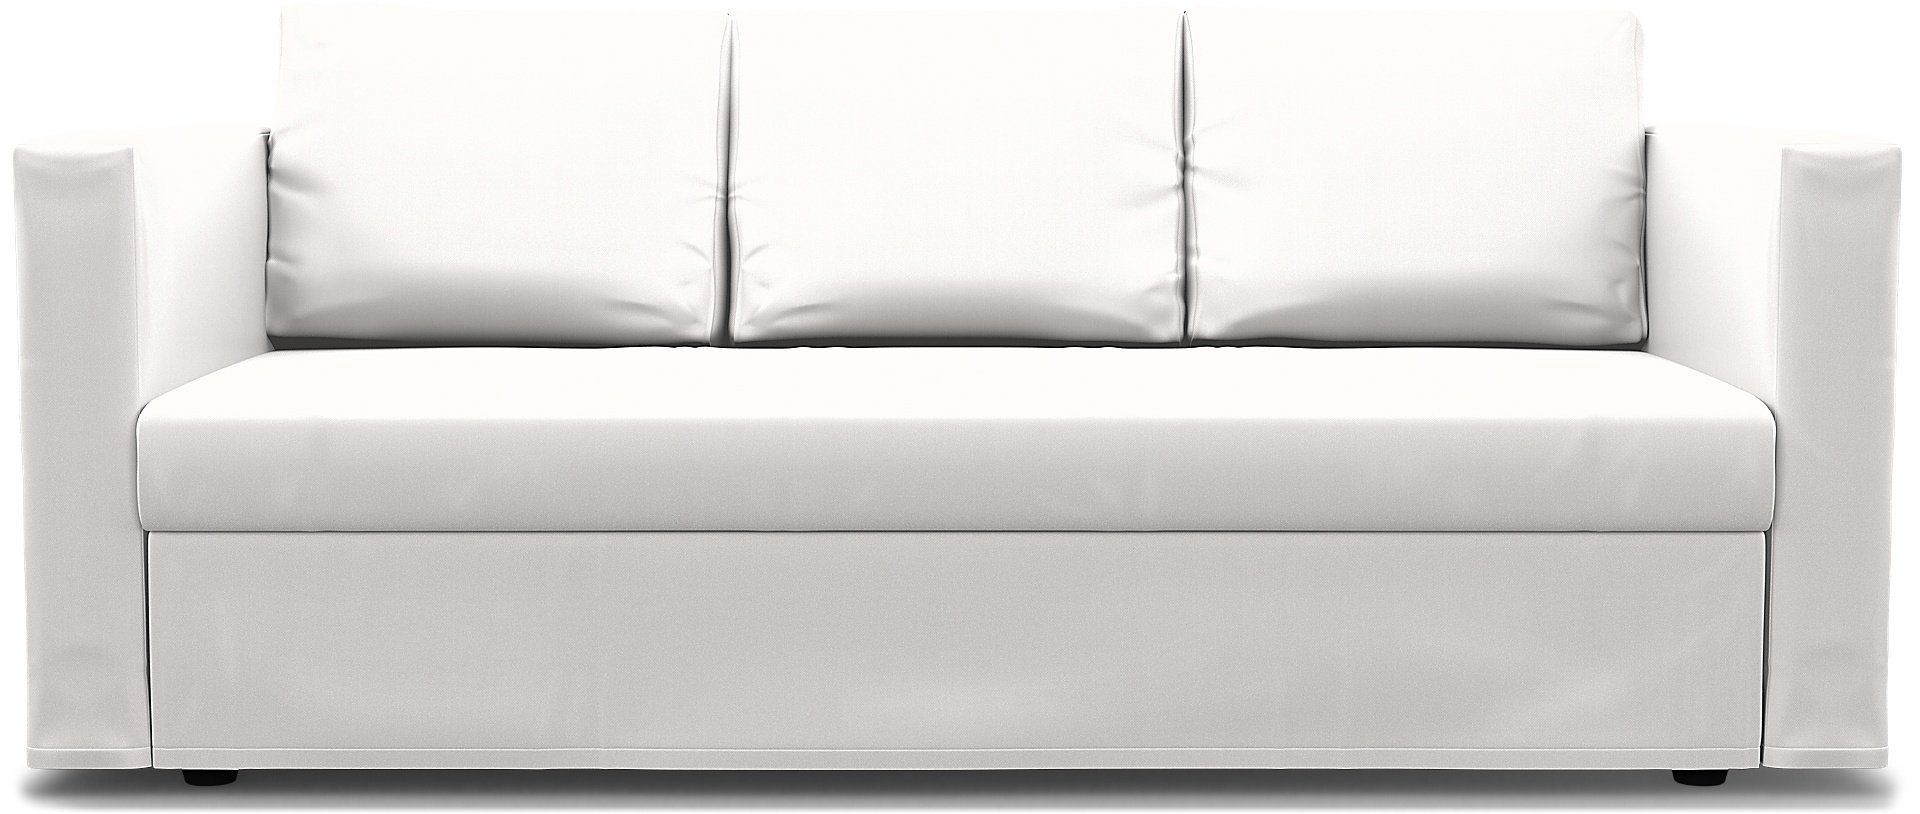 IKEA - Friheten 3 Seater Sofa Bed Cover, Soft White, Linen - Bemz